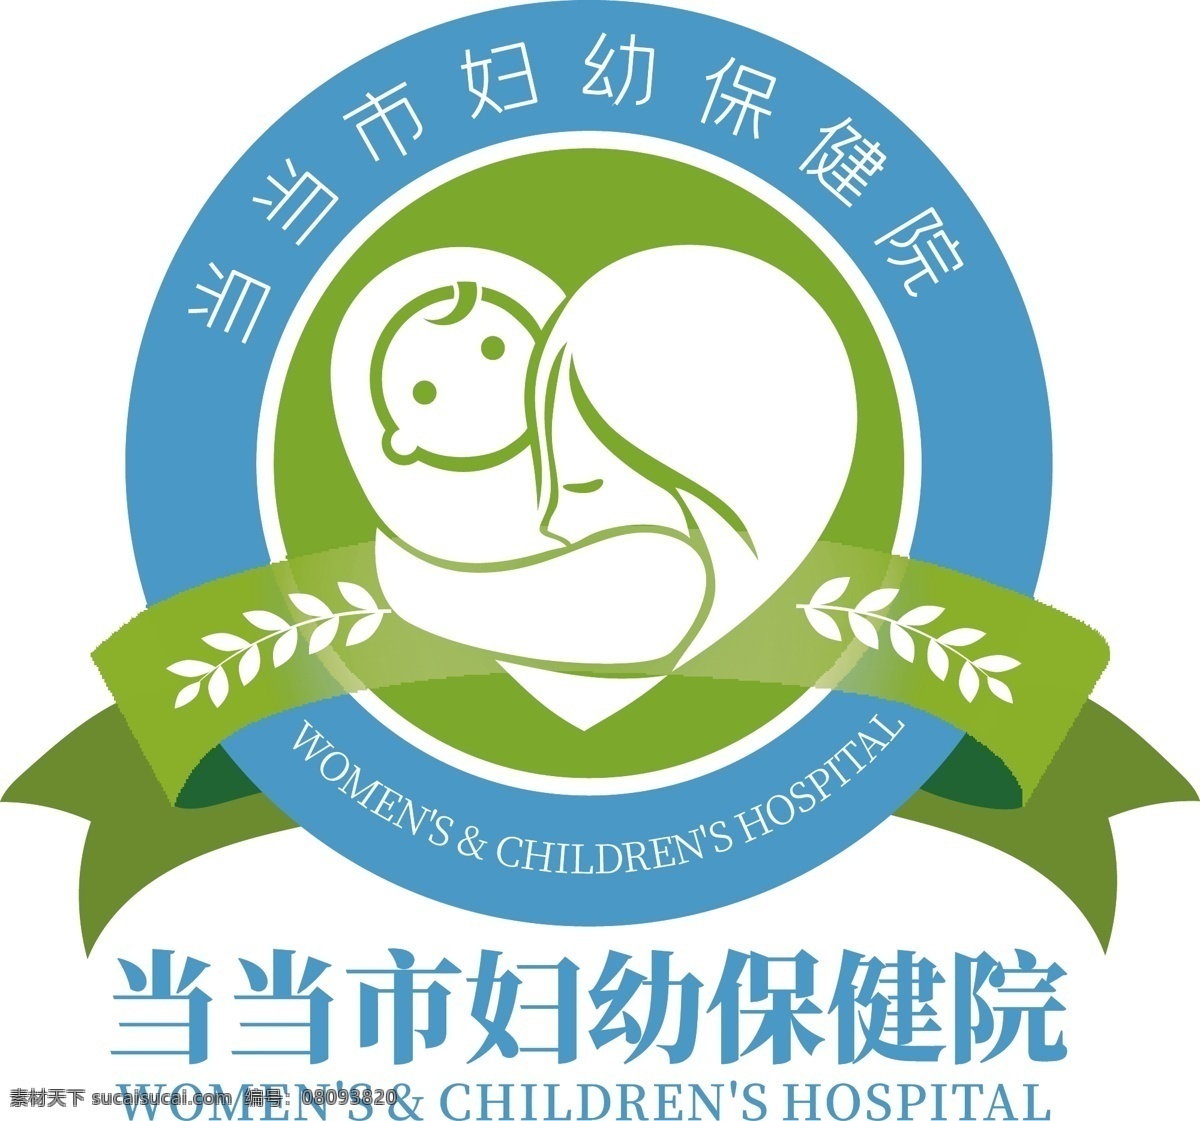 妇幼 母婴 爱心 医院 logo 儿童 儿童医院 医疗 保健 护理 健康 诊所 爱婴 关爱 妇产 孕妇 幼儿